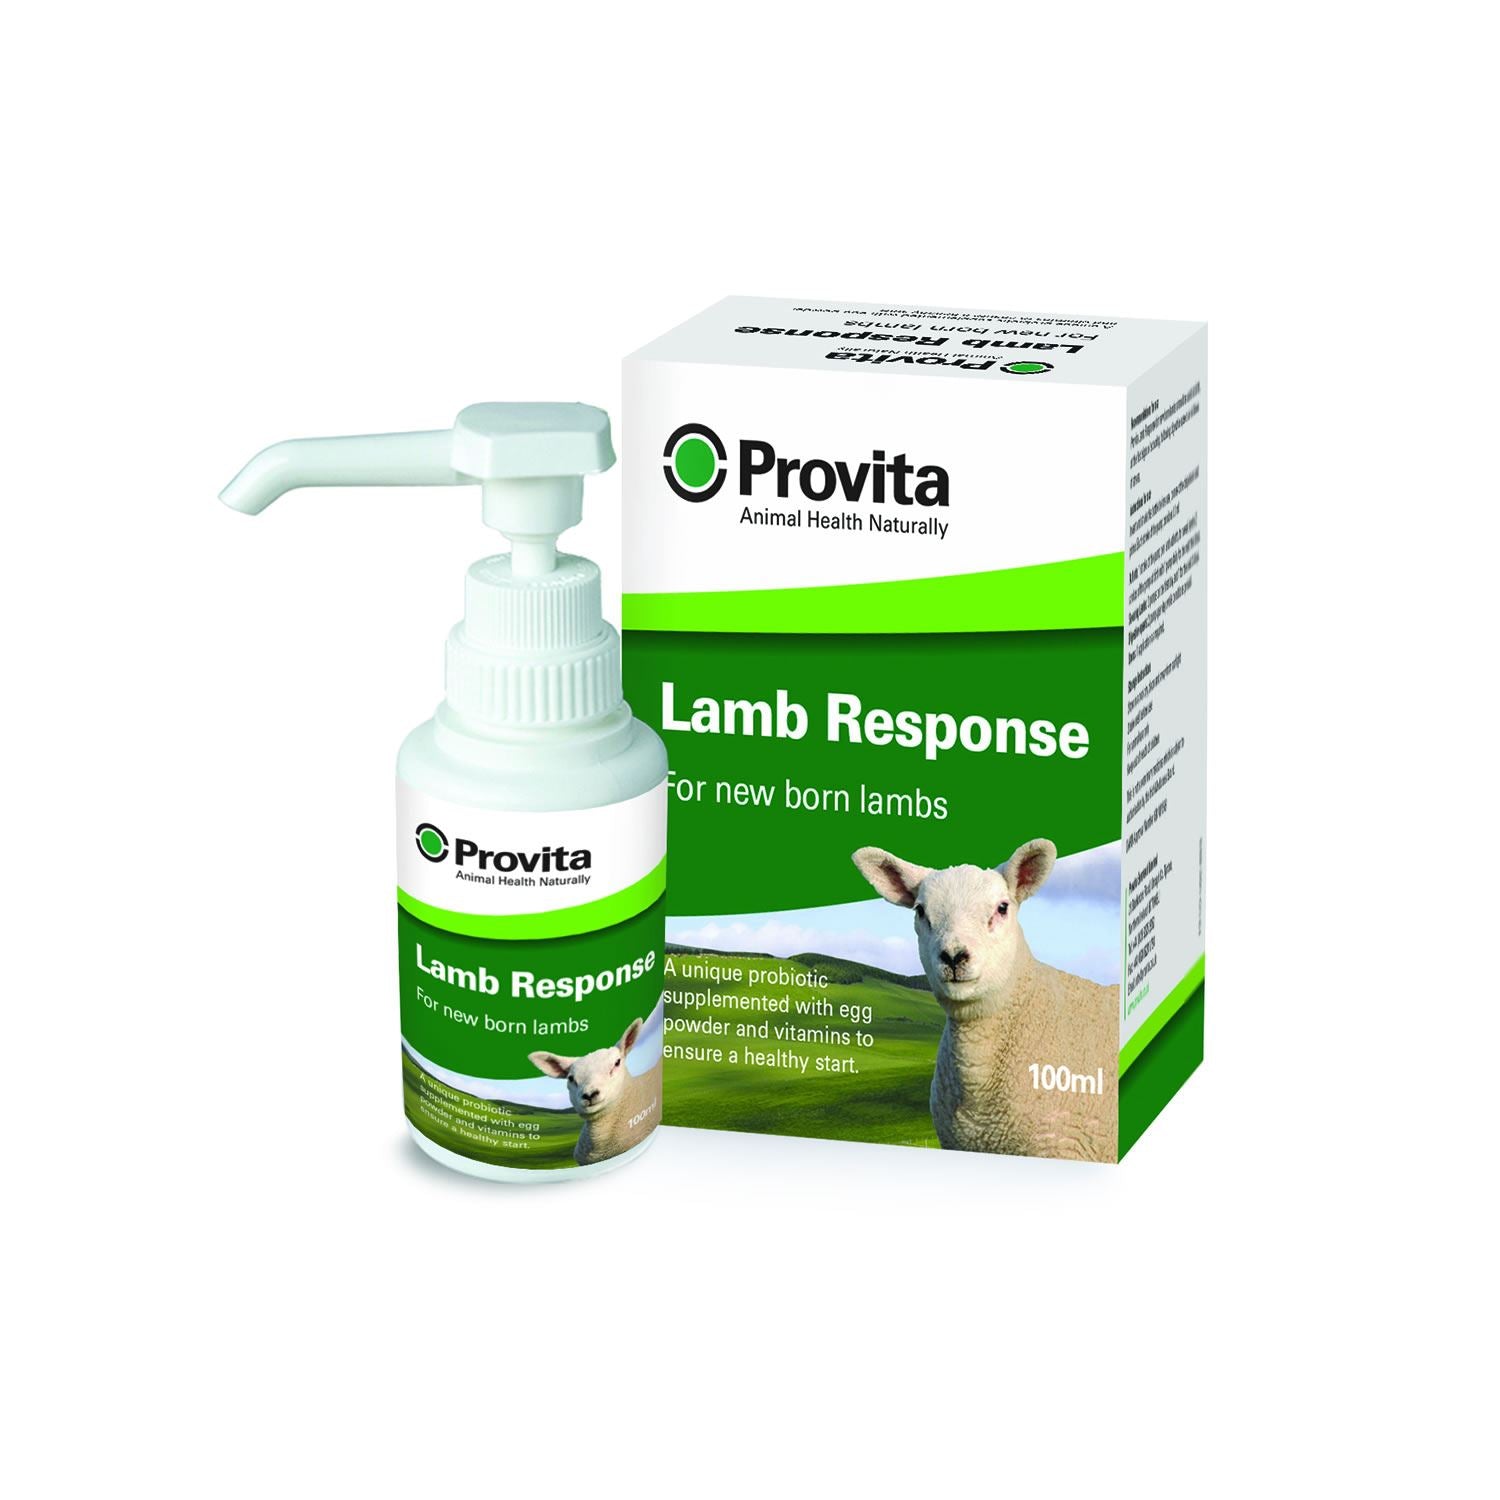 Provita Lamb Response - Just Horse Riders